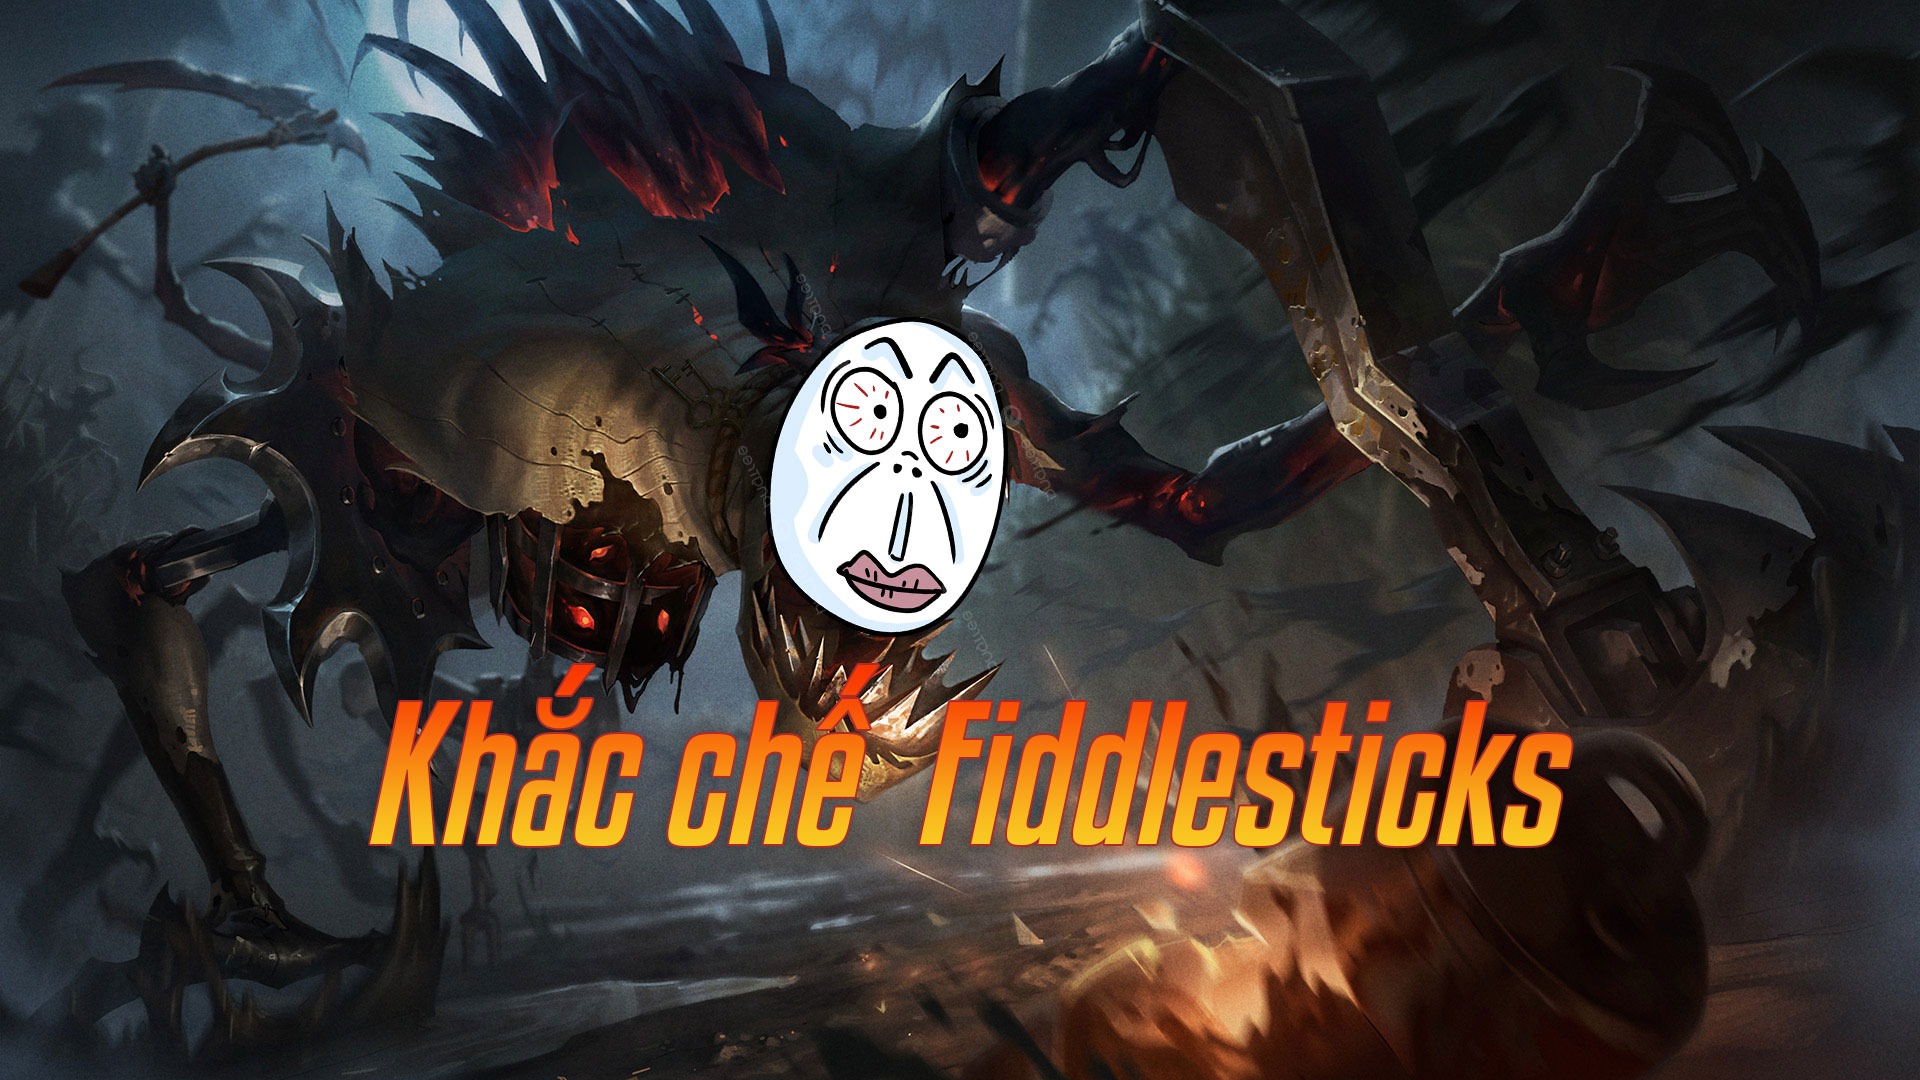 Khắc chế Fiddlesticks>